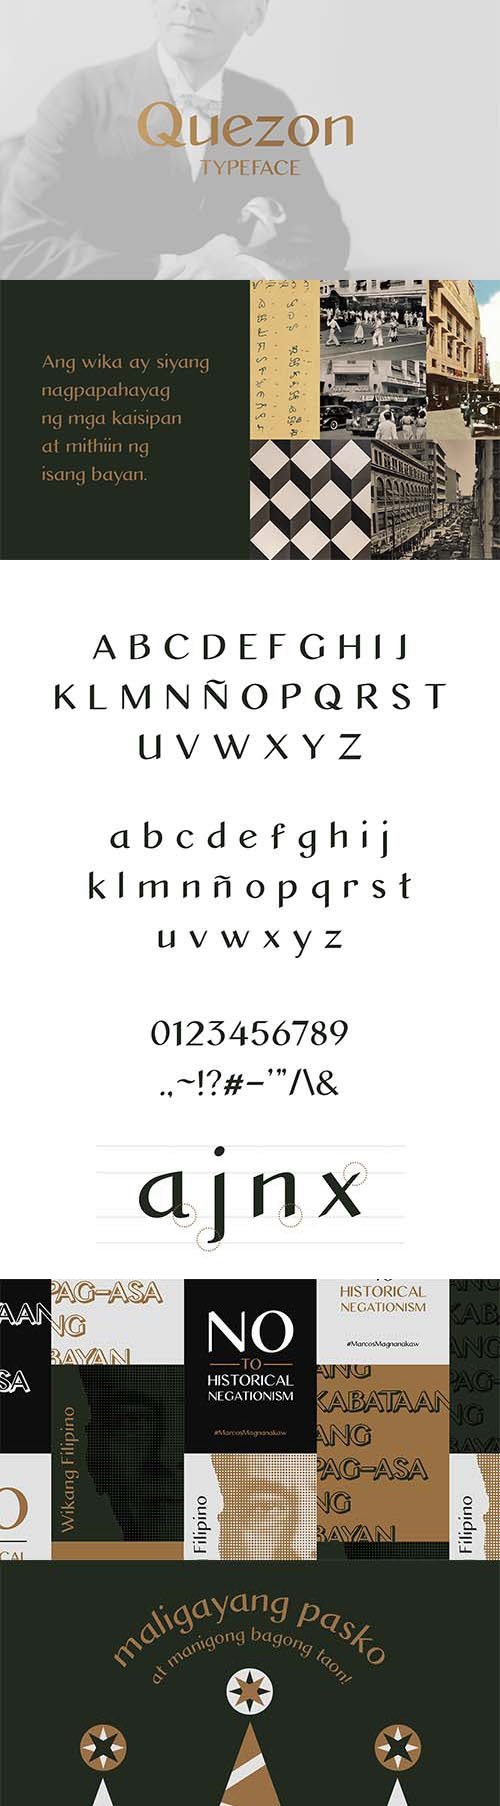 Quezon Sans Typeface